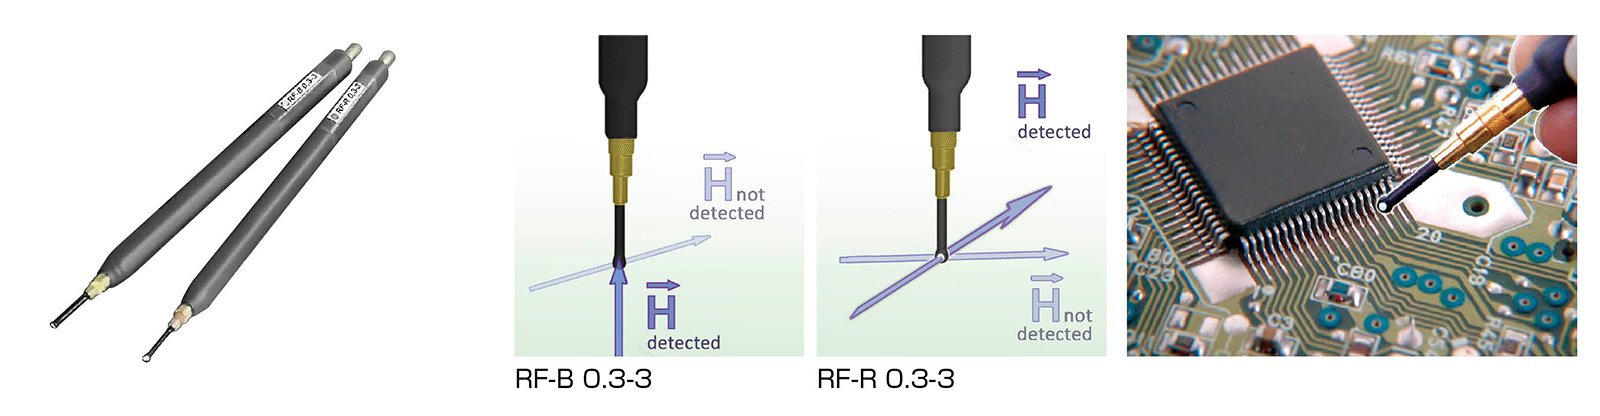 近场探头 型号 : LF1 set/RF1 set/RF2 set/RF3 mini set